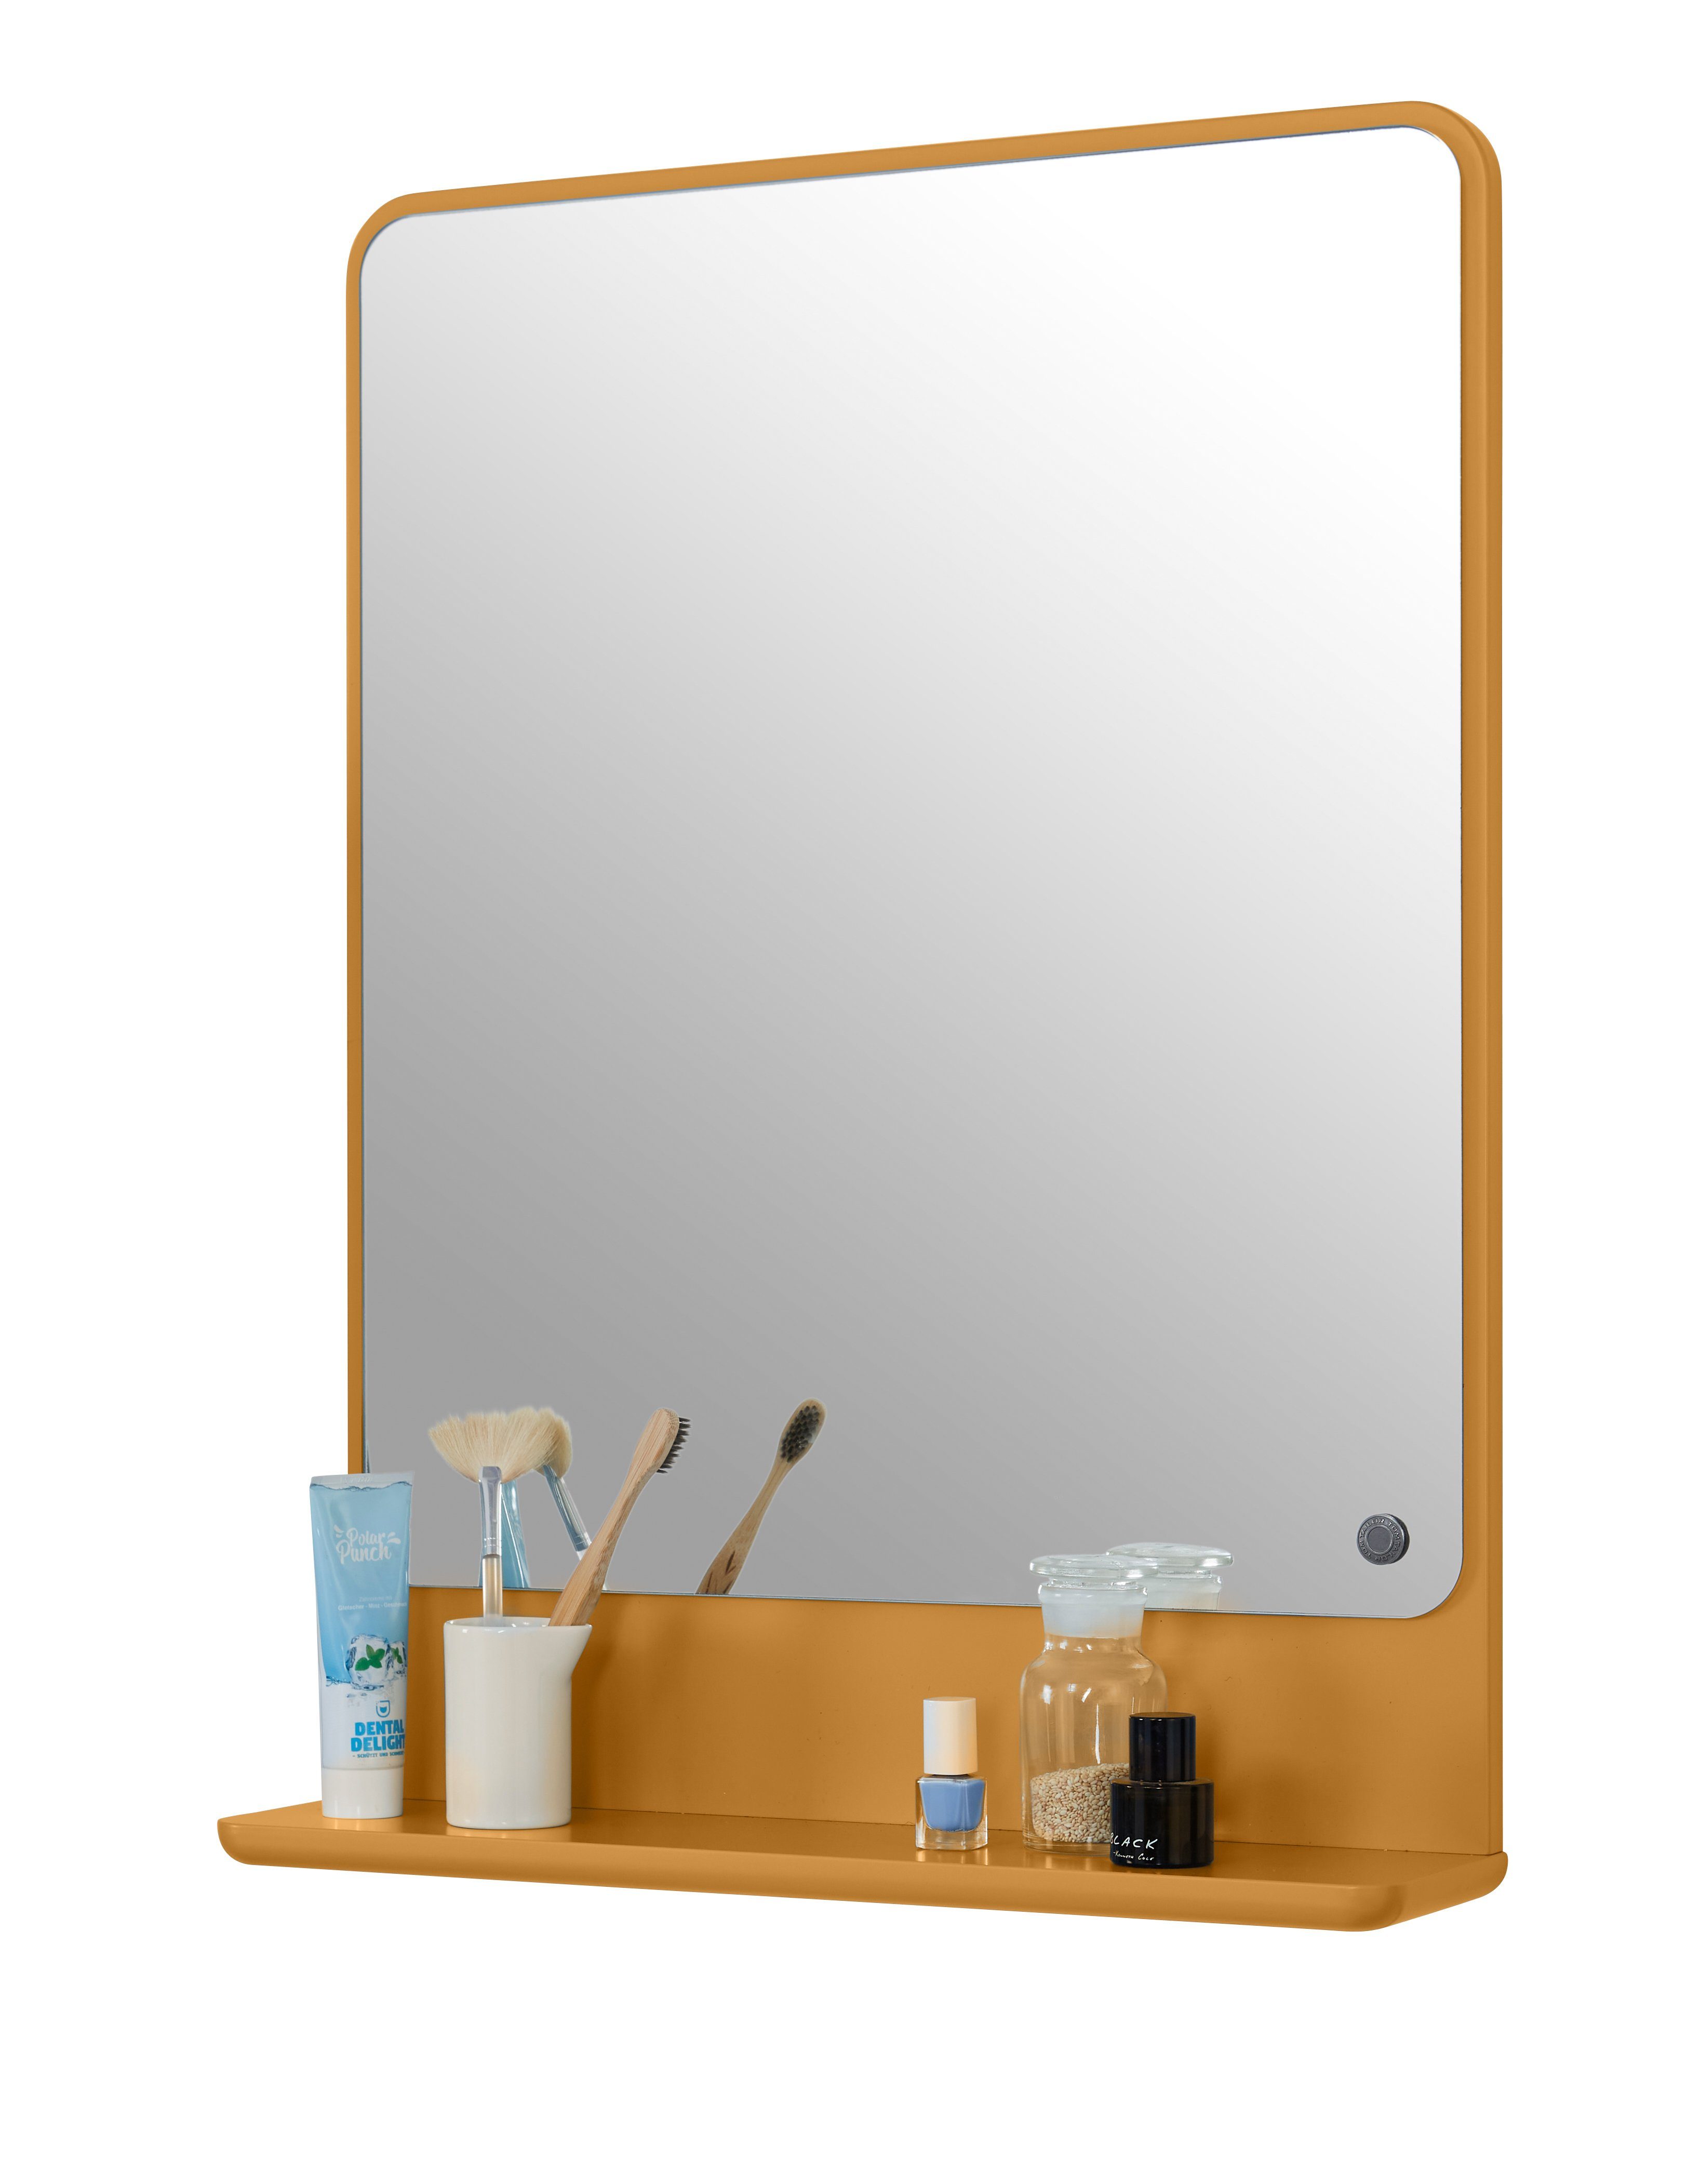 TOM TAILOR HOME Badspiegel COLOR BATH Spiegelelement - in vielen schönen Farben - 70 x 52 x 13 cm, hochwertig lackiertes MDF, gerundete Kanten mustard029